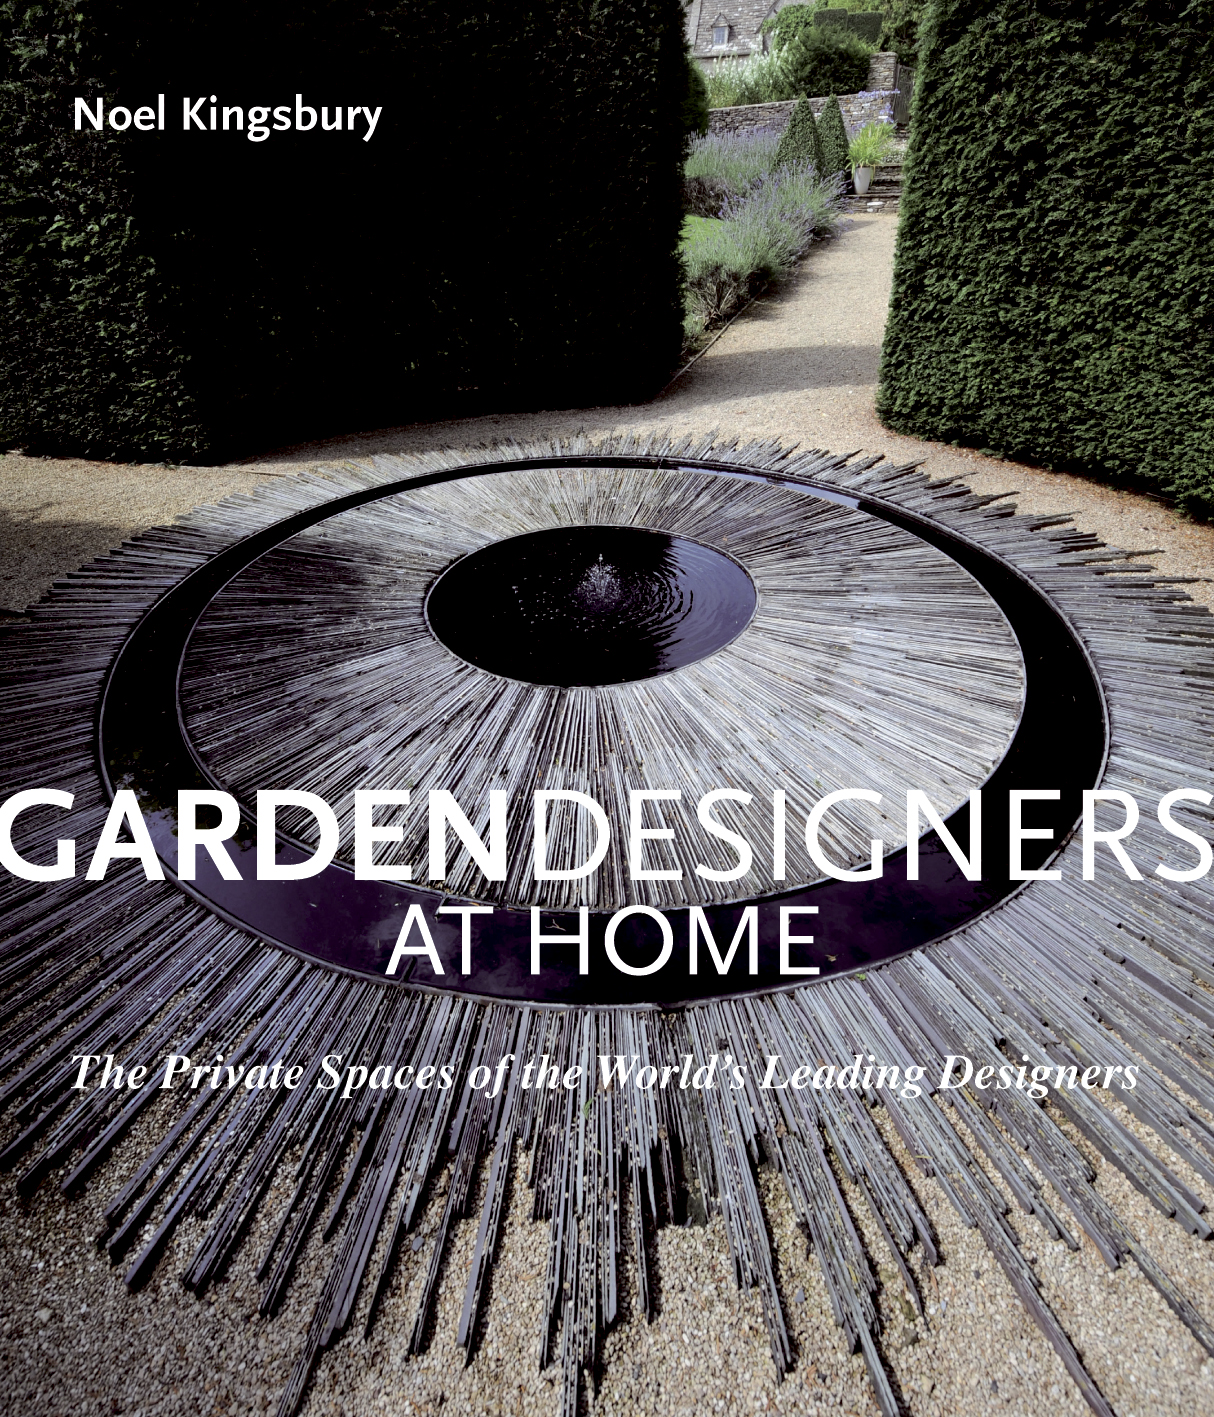 Garden Designers at Home by Noel Kingsbury